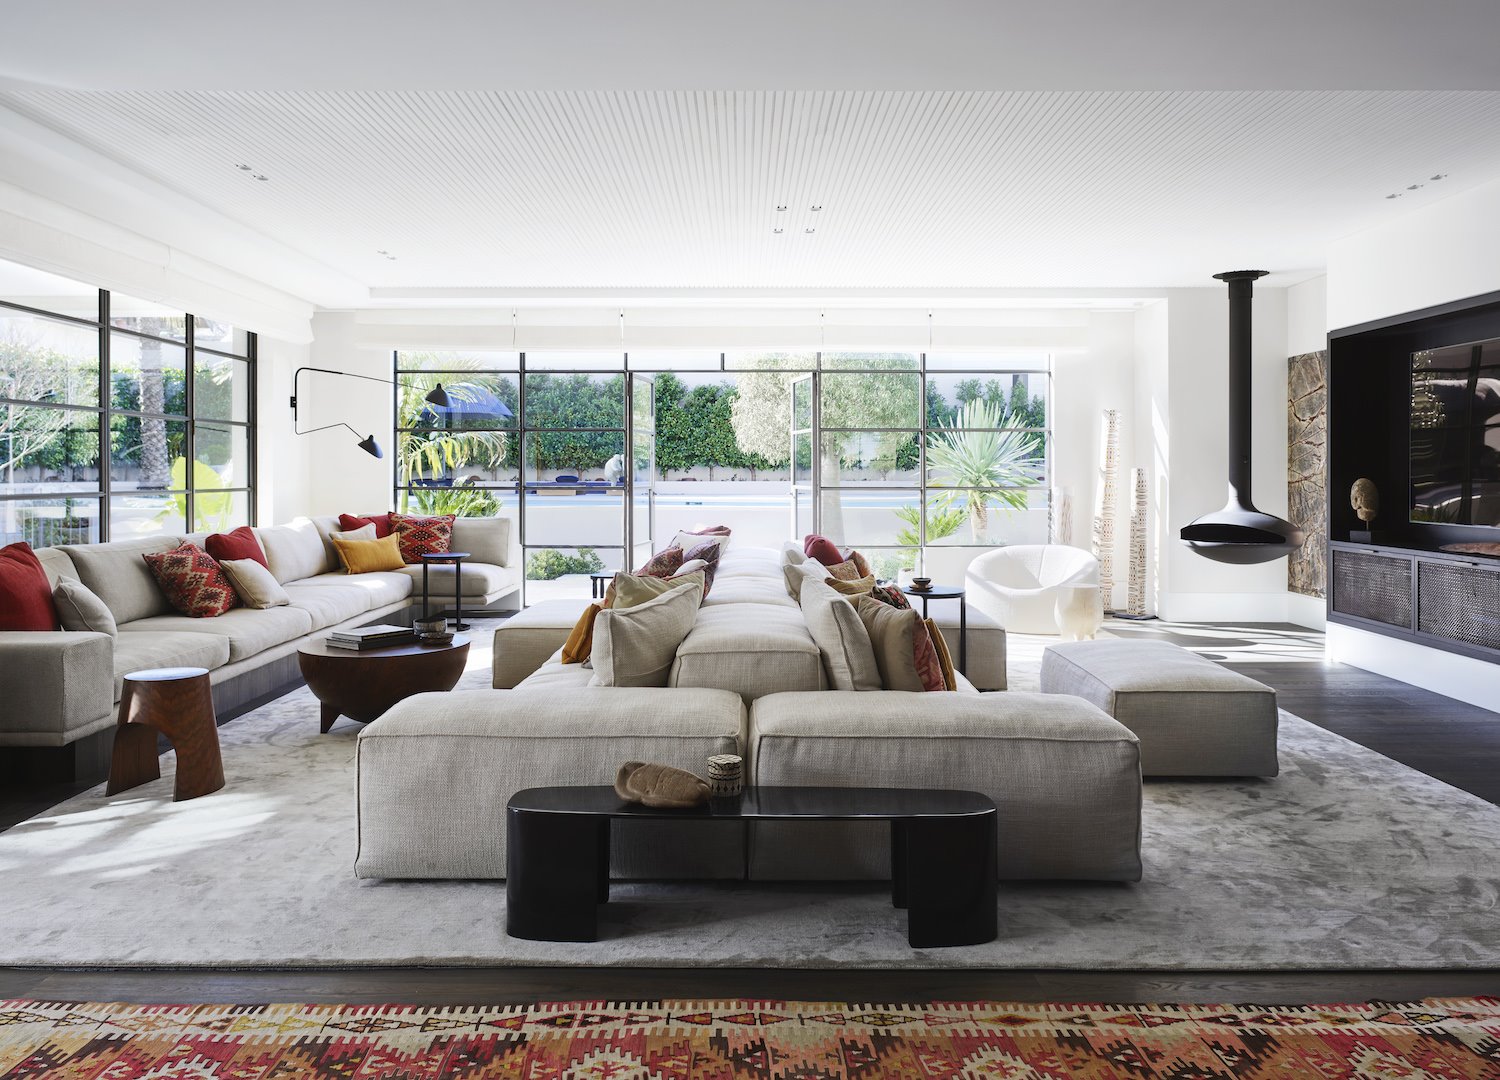 Salon con sofas de color blanco chimenea y alfombras. Salón